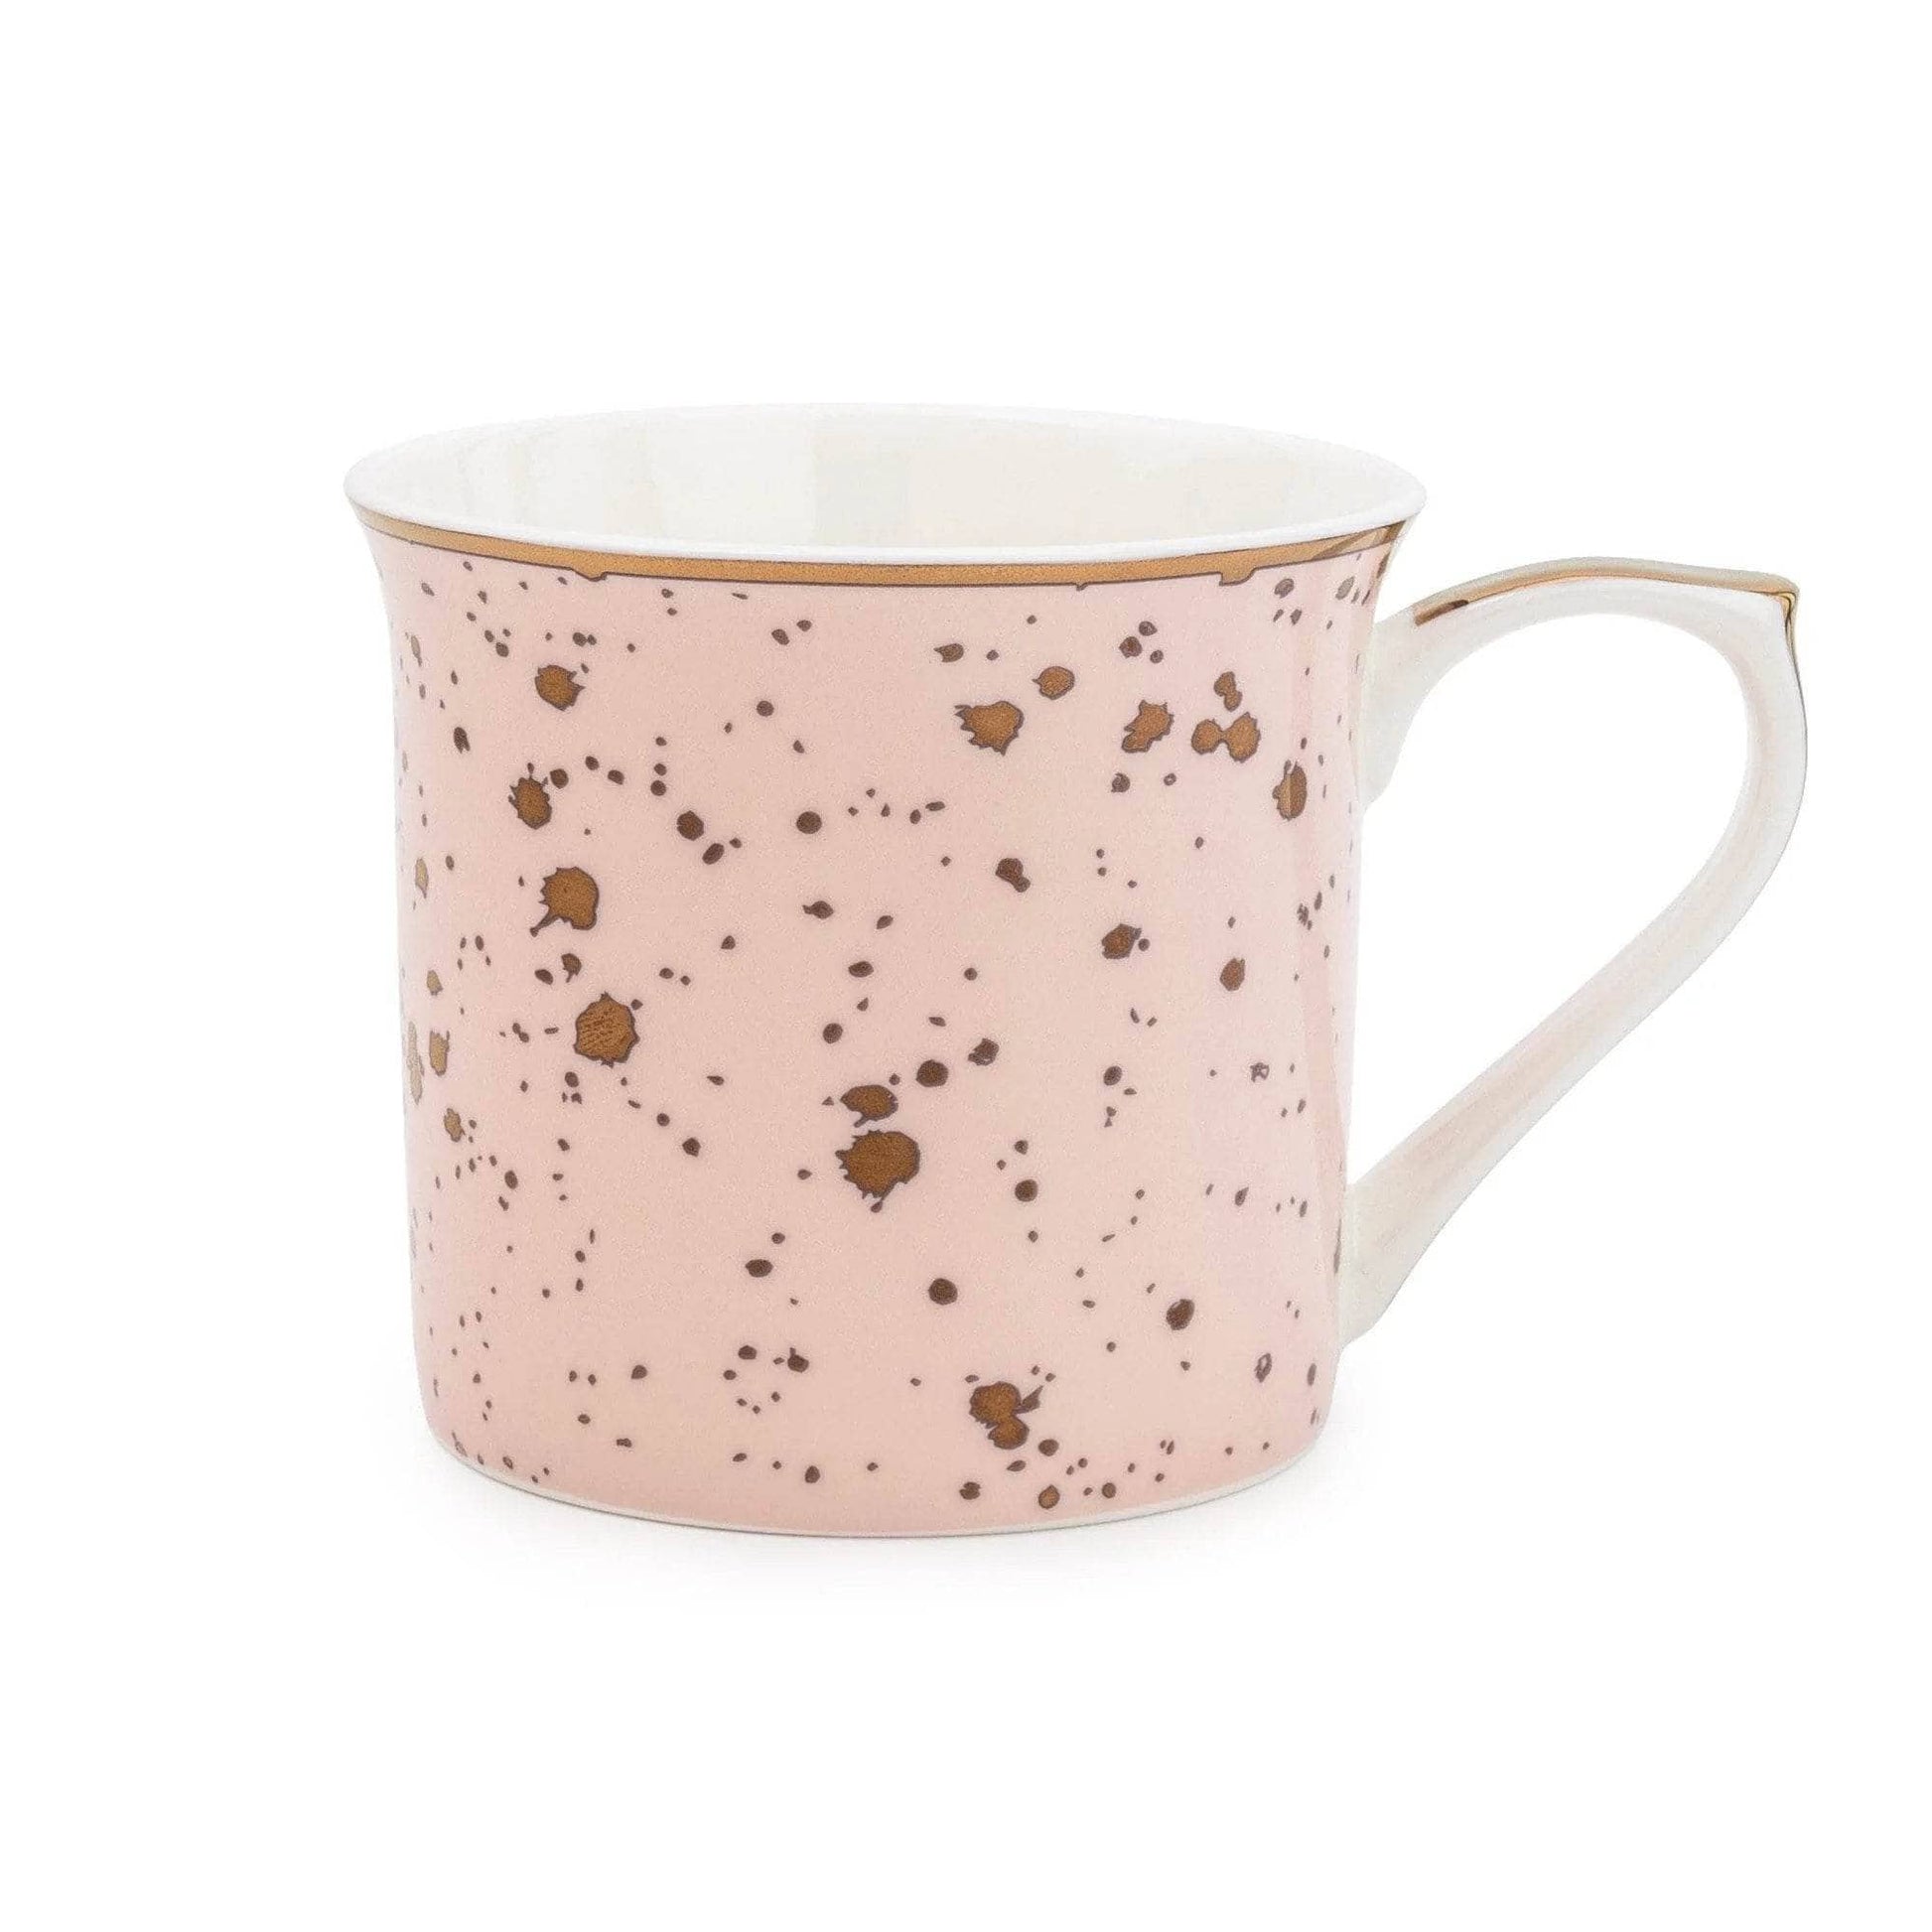  -  Pink Speckle Mug  -  60005311